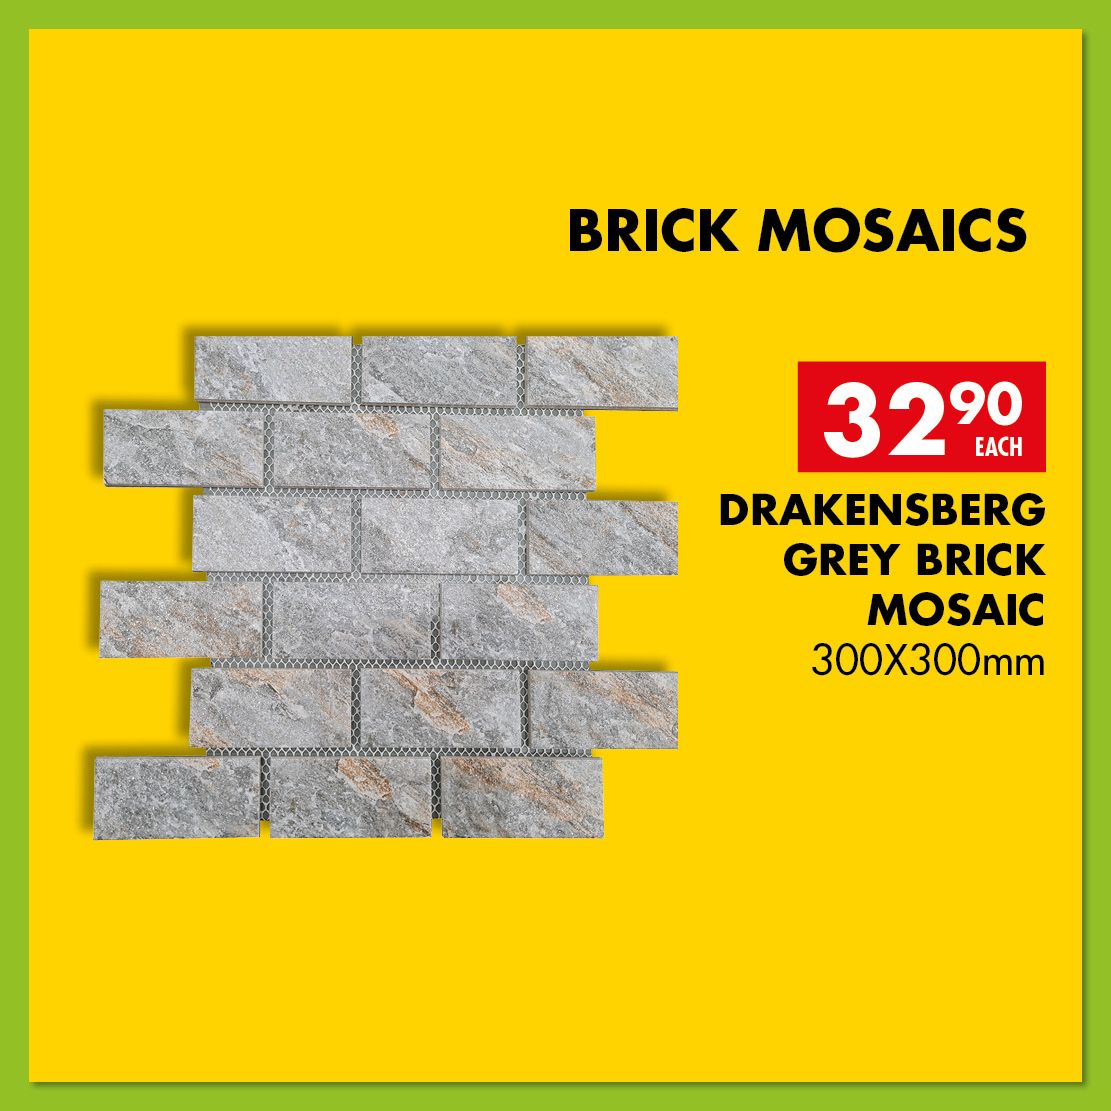 Drankensberg_grey_brick